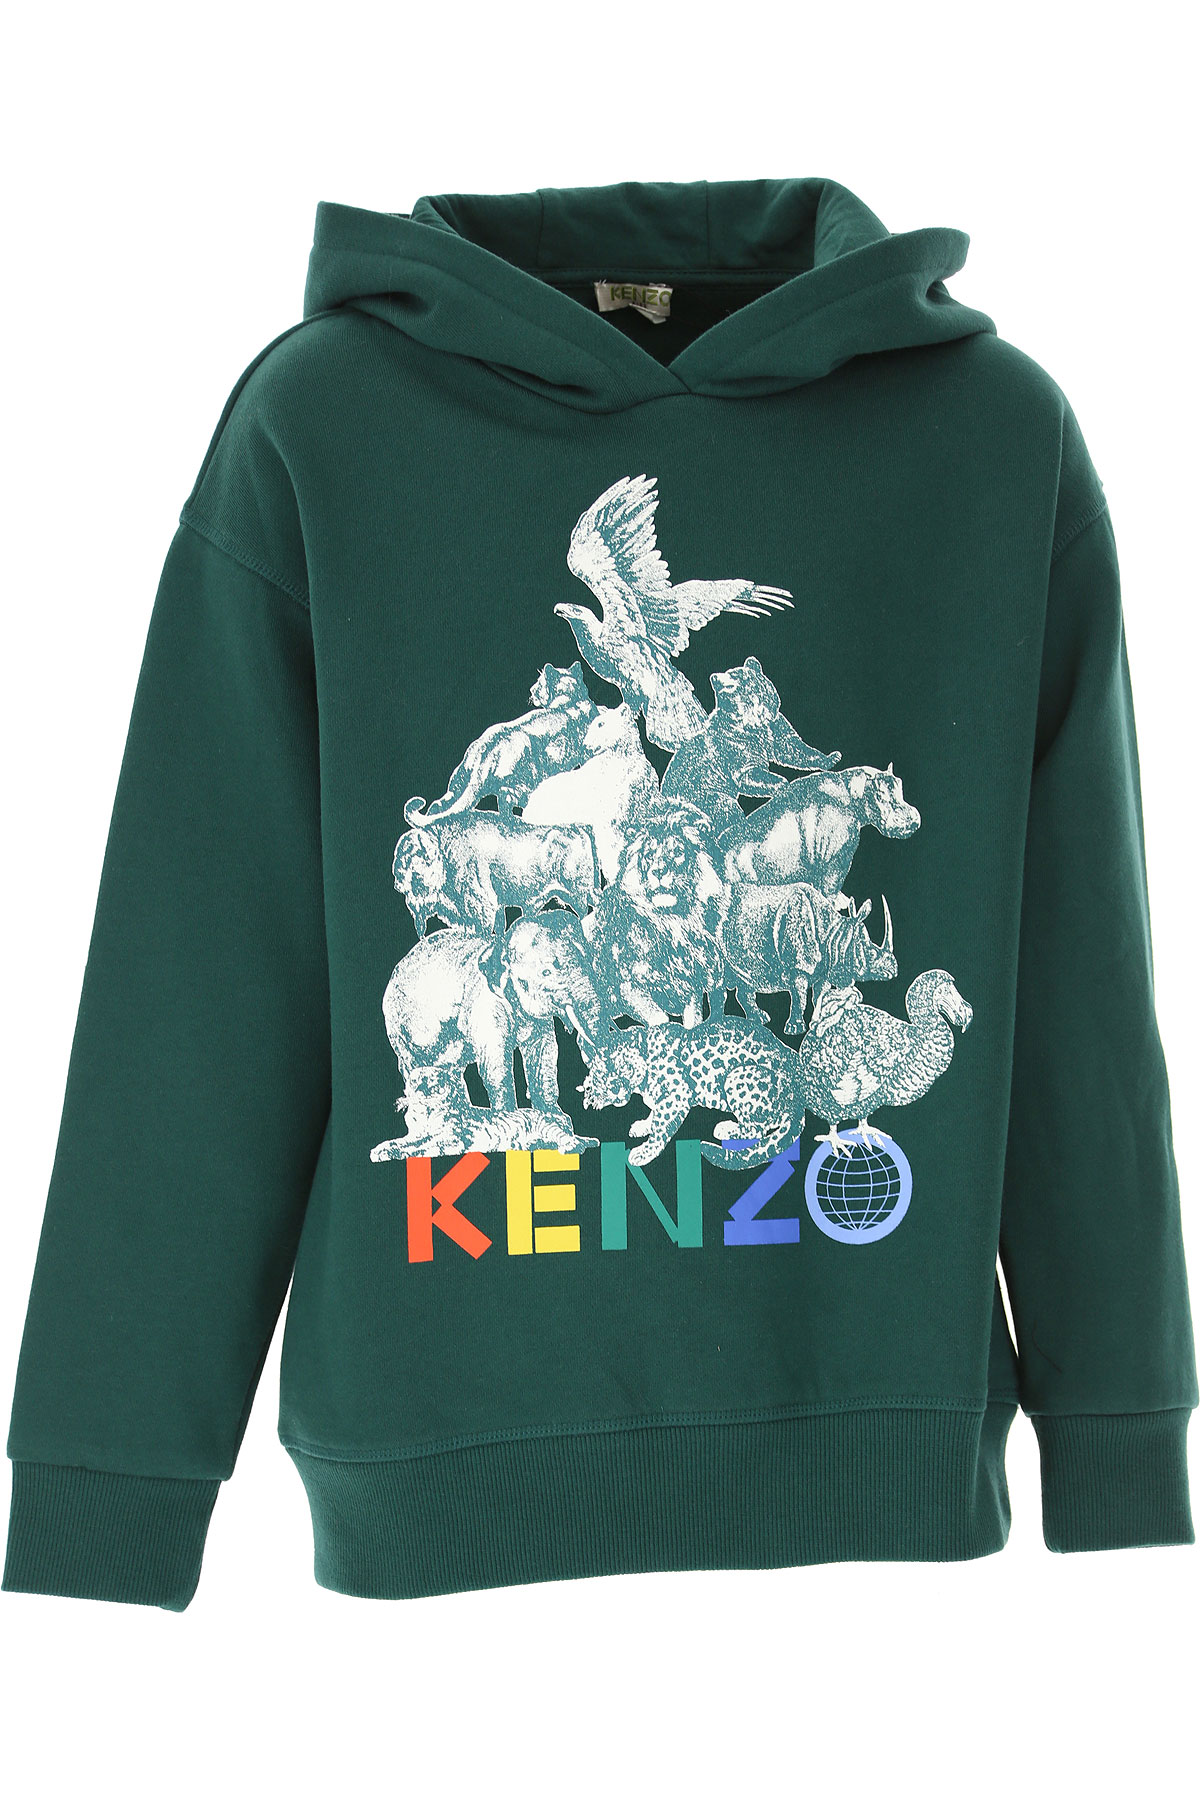 Kenzo Kinder Sweatshirt & Kapuzenpullover für Jungen Günstig im Sale, Grün, Baumwolle, 2017, 10Y 12Y 6Y 8Y